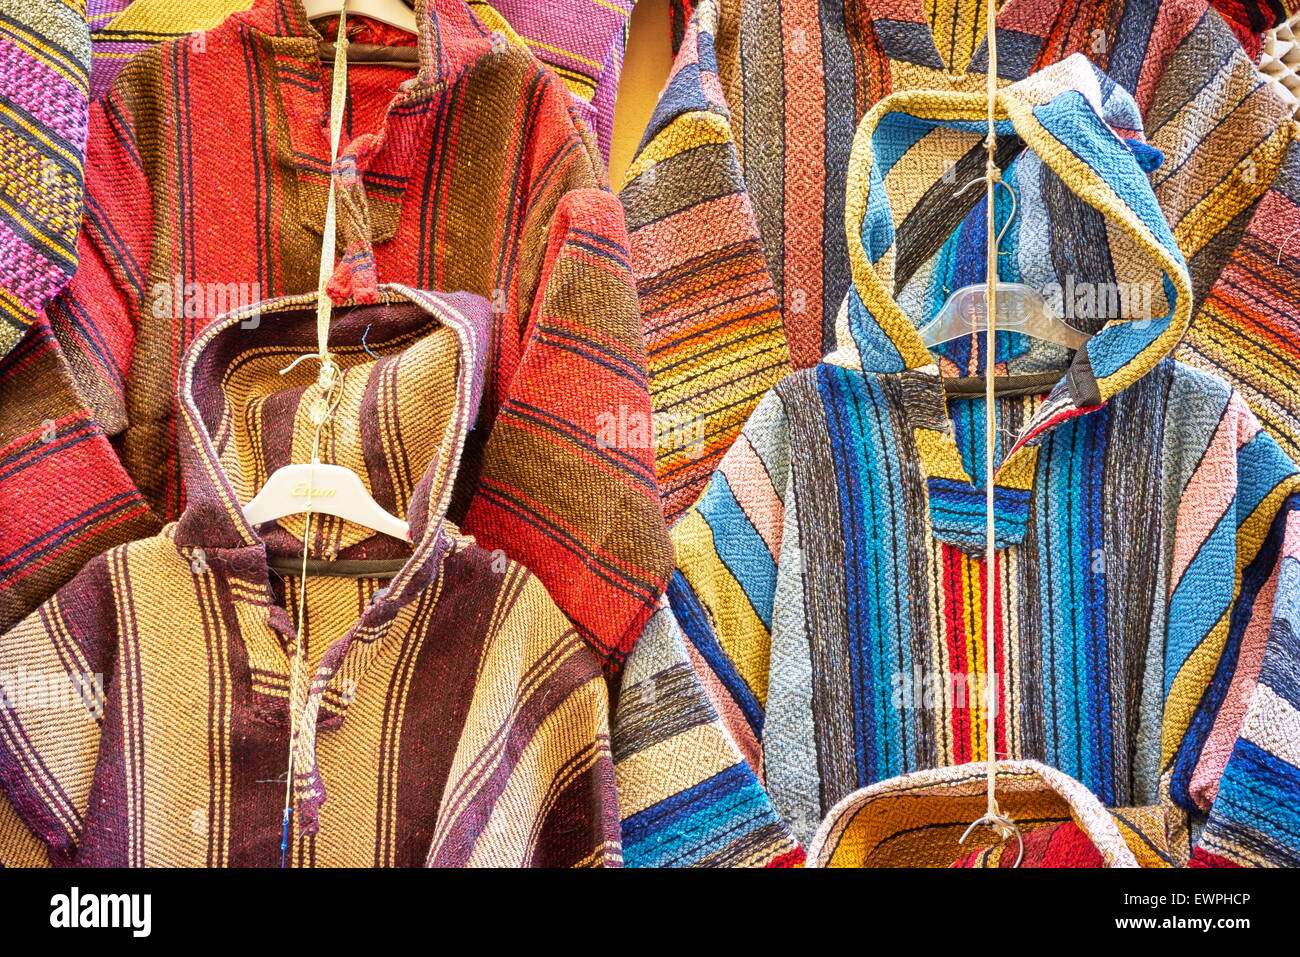 Bekleidungsgeschäft. Wolle Djellabas, Berber marokkanische traditionelle Kleidung. Marokko Stockfoto